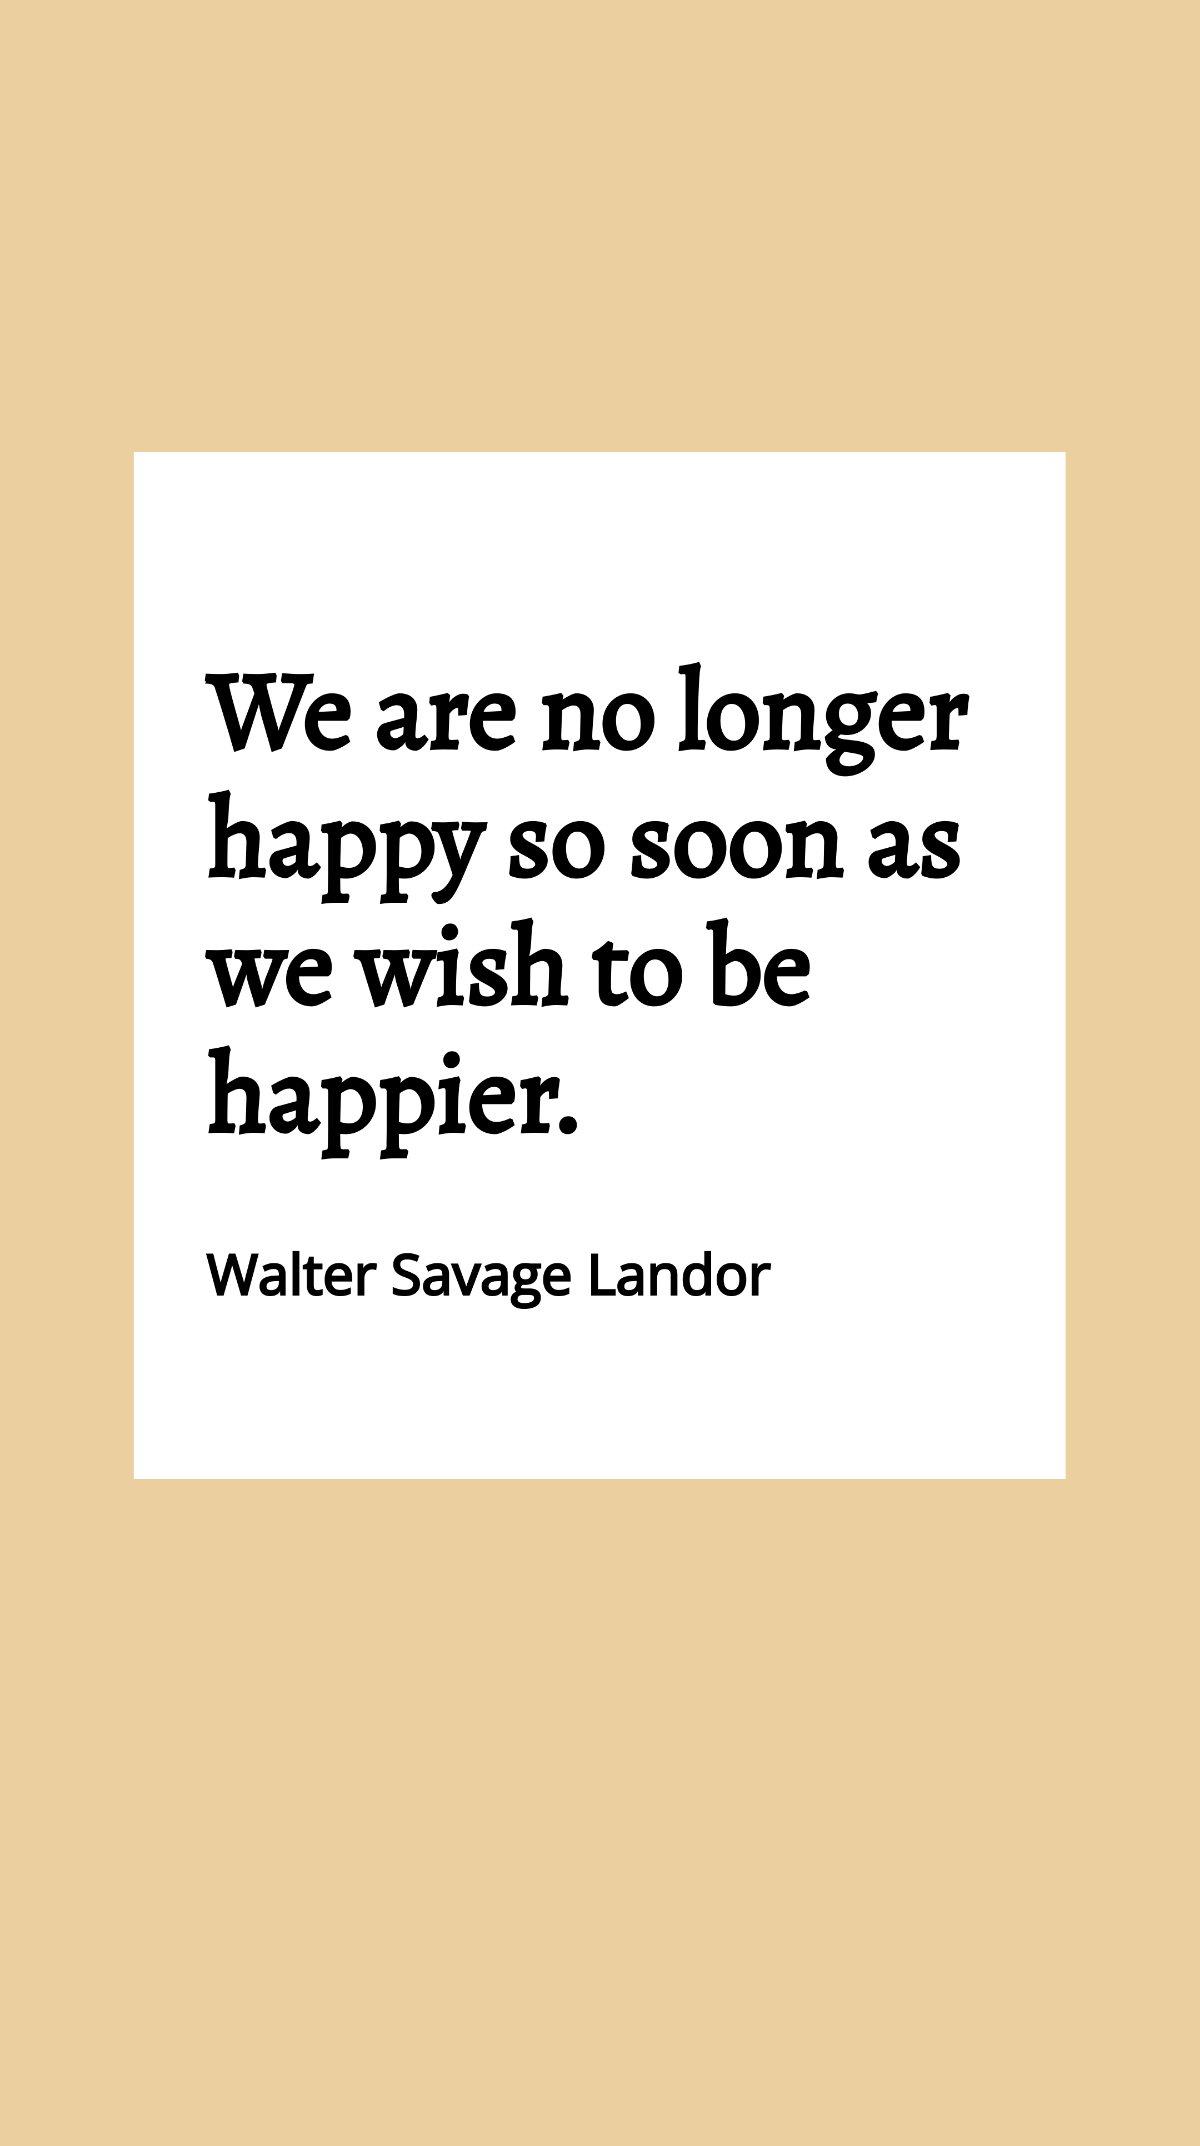 Walter Savage Landor - We are no longer happy so soon as we wish to be happier. Template